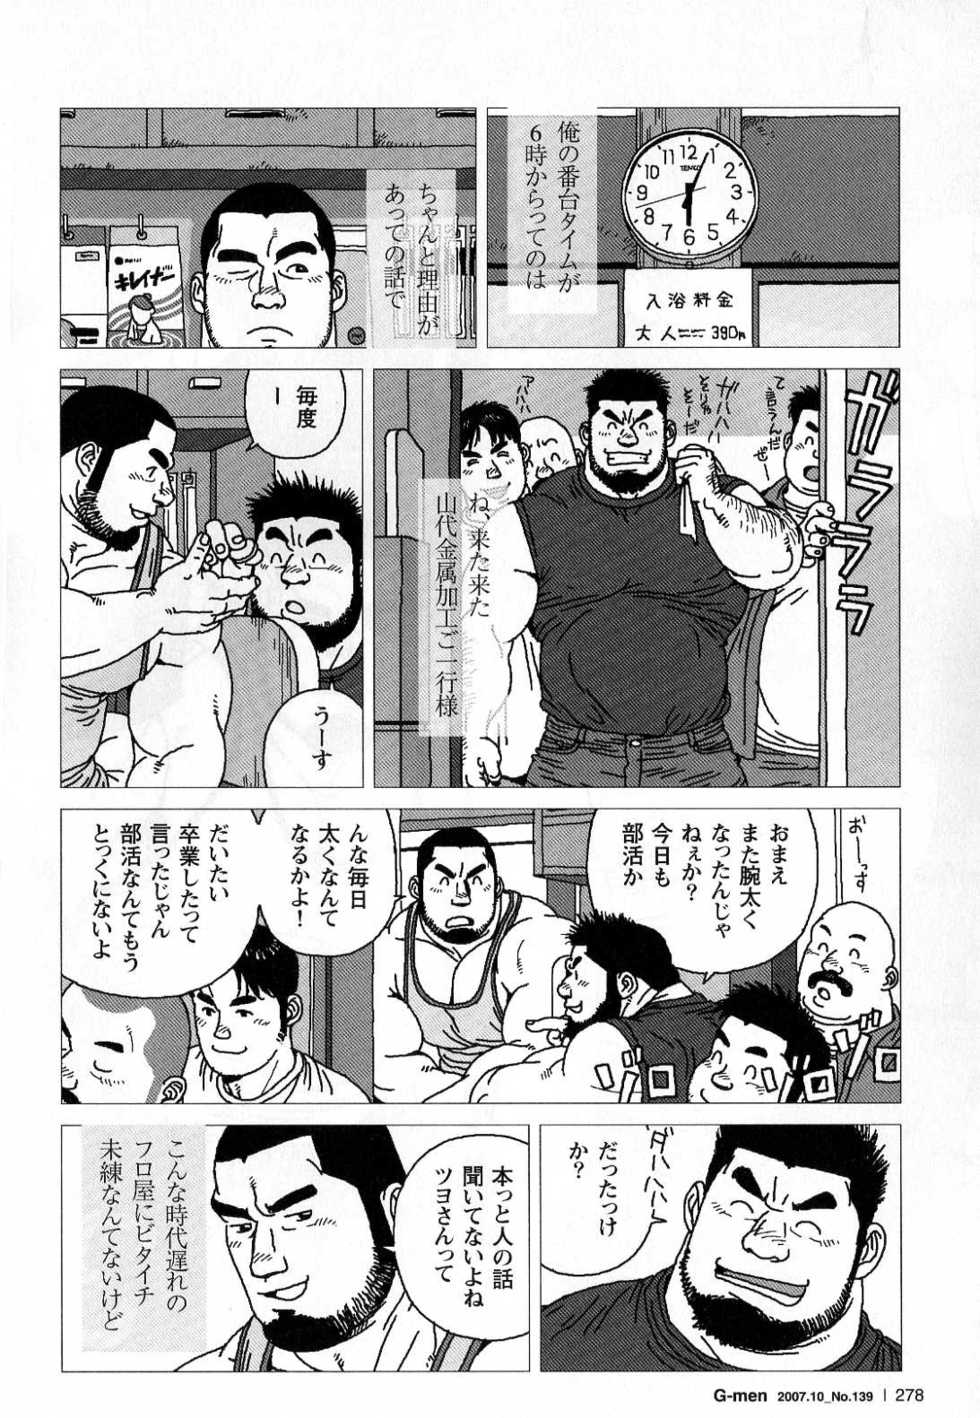 [Jiraiya] Kibou Machi Sanchoume Fujino Yu Monogatari (G-men No.139 2007-10) - Page 4